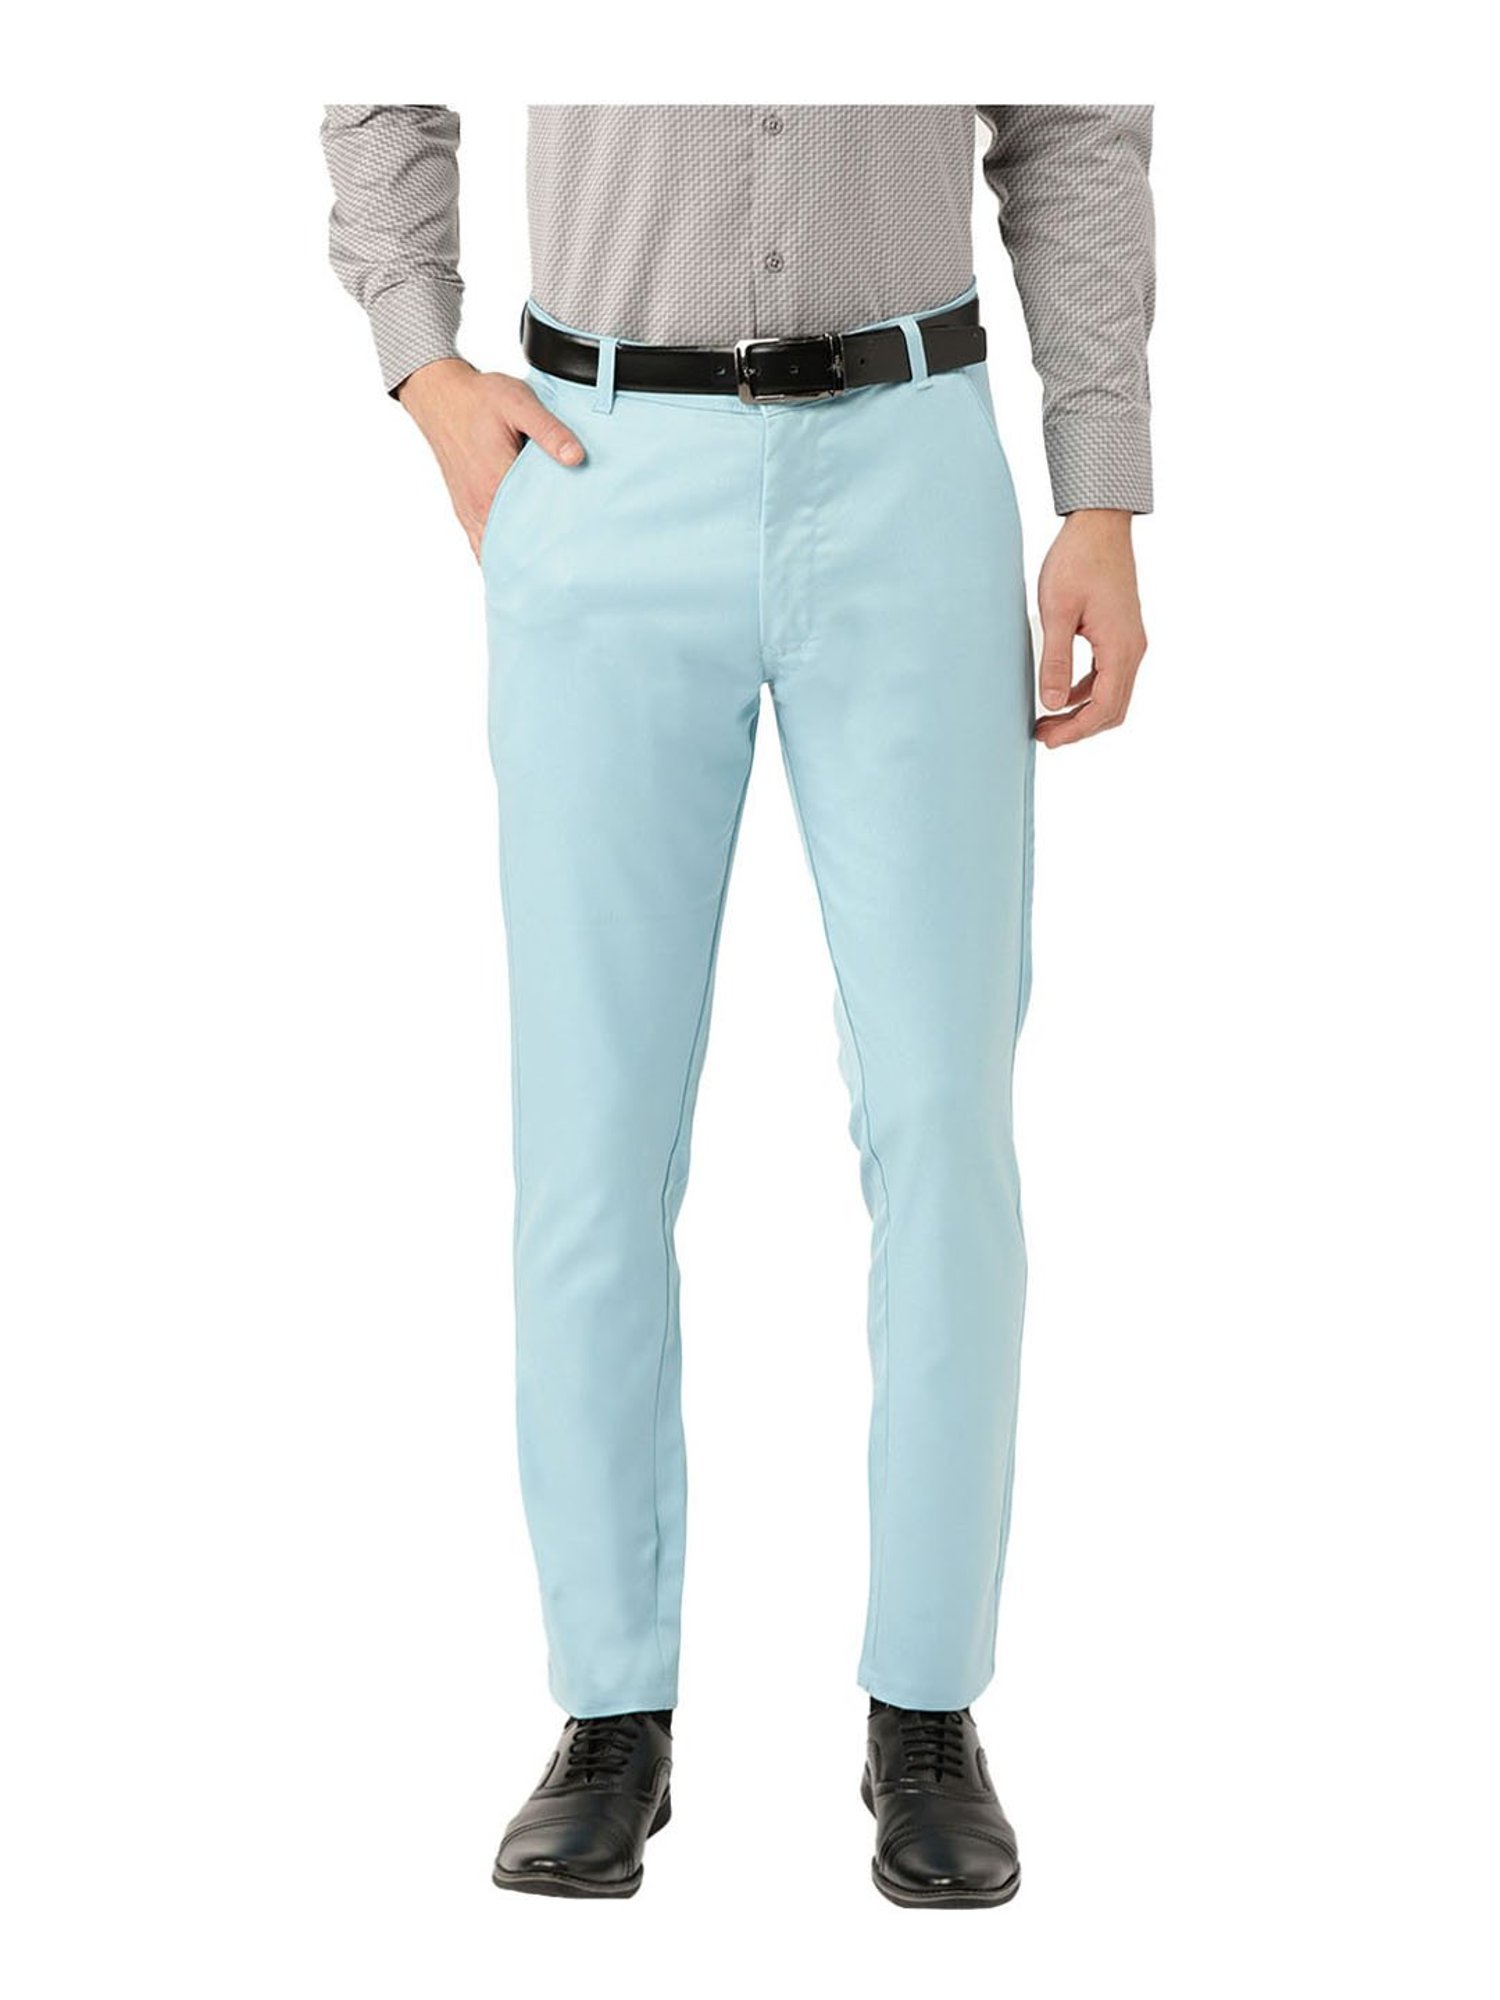 Men's Turquoise Blue Pants | Aqua Blue Concitor Pant